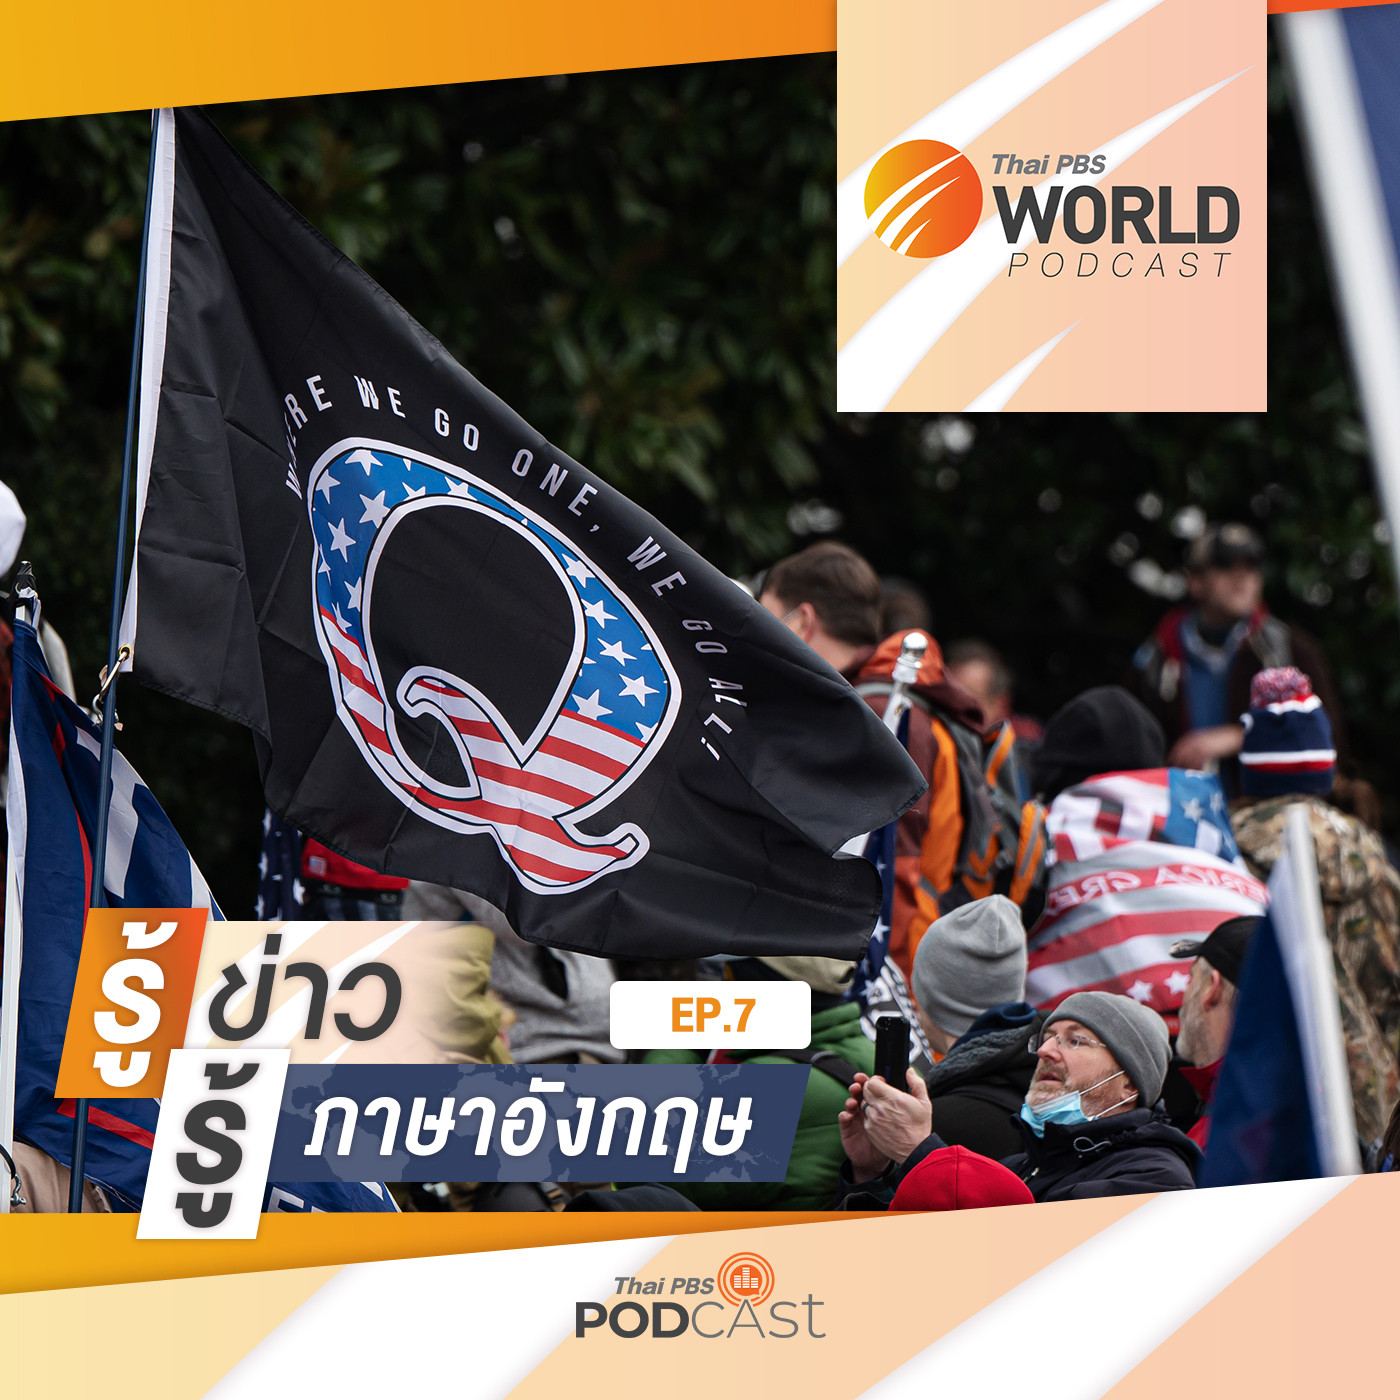 Thai PBS World Podcast - รู้ข่าว รู้ภาษาอังกฤษ EP. 7: รู้ข่าว รู้ภาษาอังกฤษ - QAnon กลุ่มผู้สนับสนุน "โดนัลด์ ทรัมป์" ที่เชื่อในทฤษฎีสมคบคิด